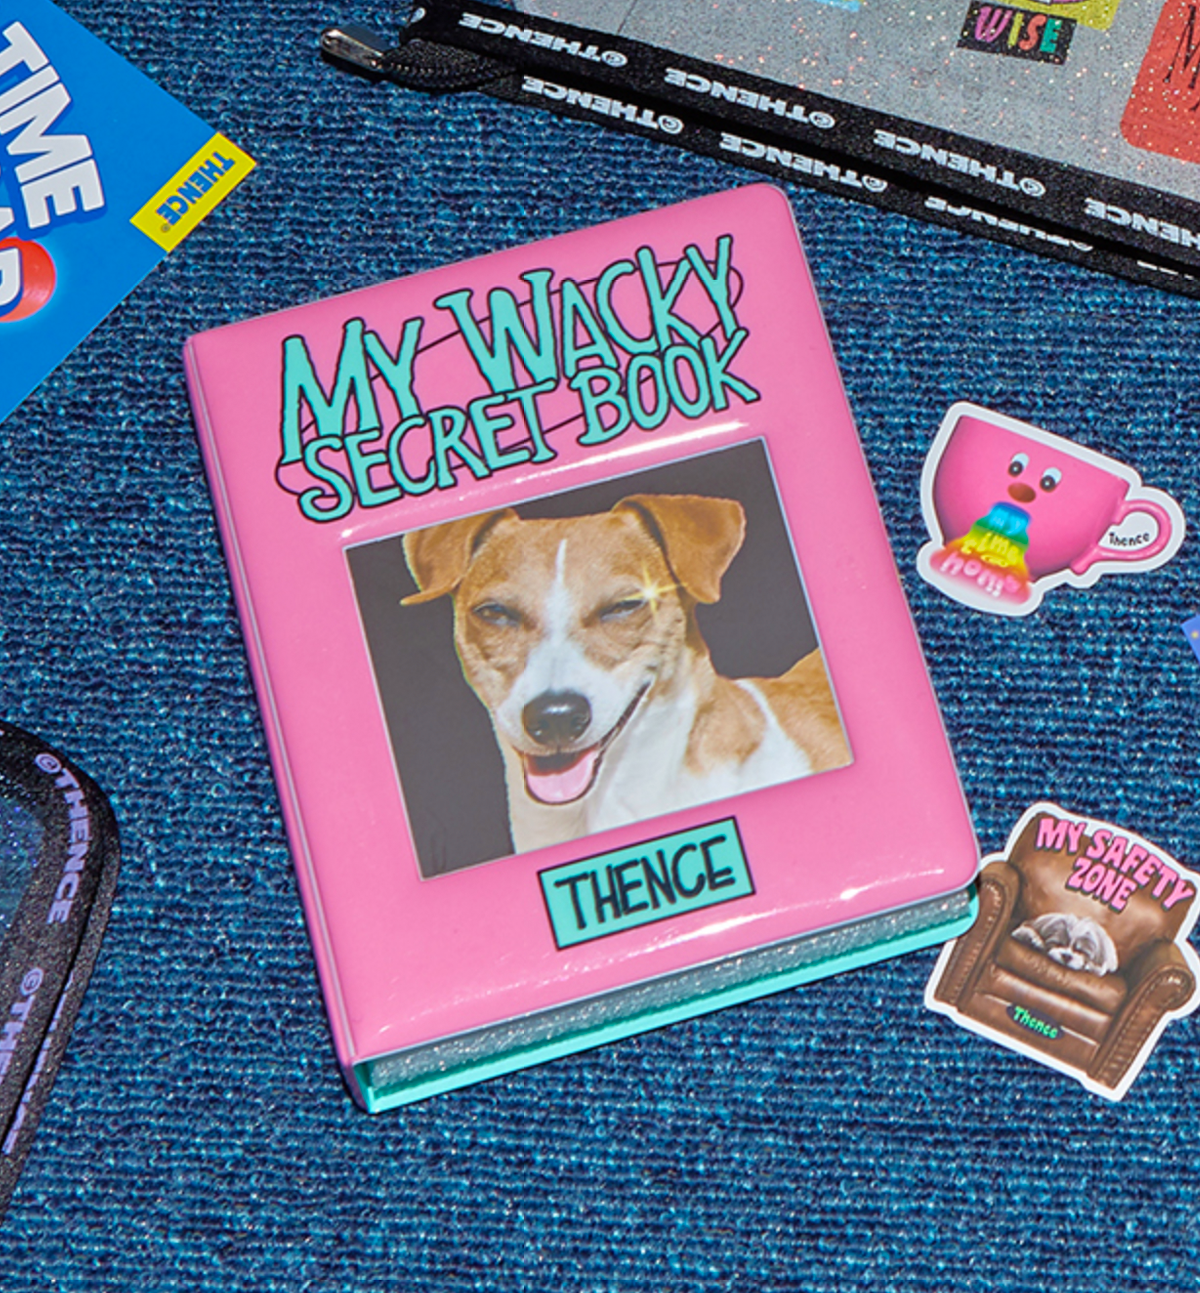 My Wacky Secret Collect Book [Light Pink]